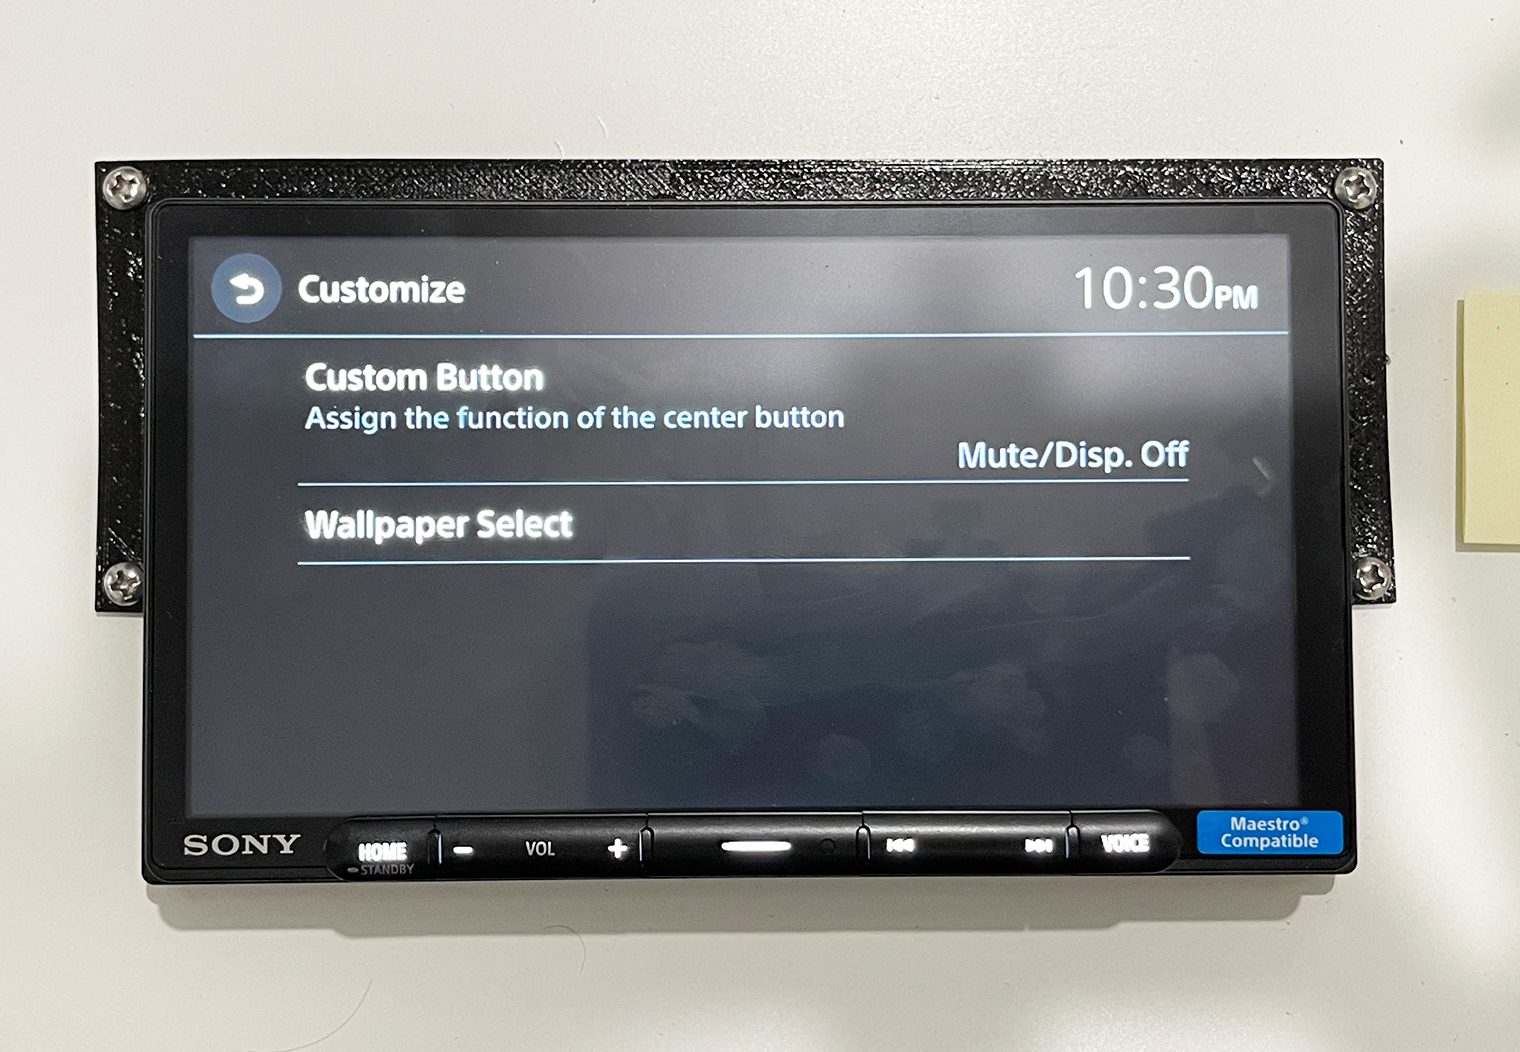 Sony XAV-AX4000 vs XAV-AX6000 customize settings